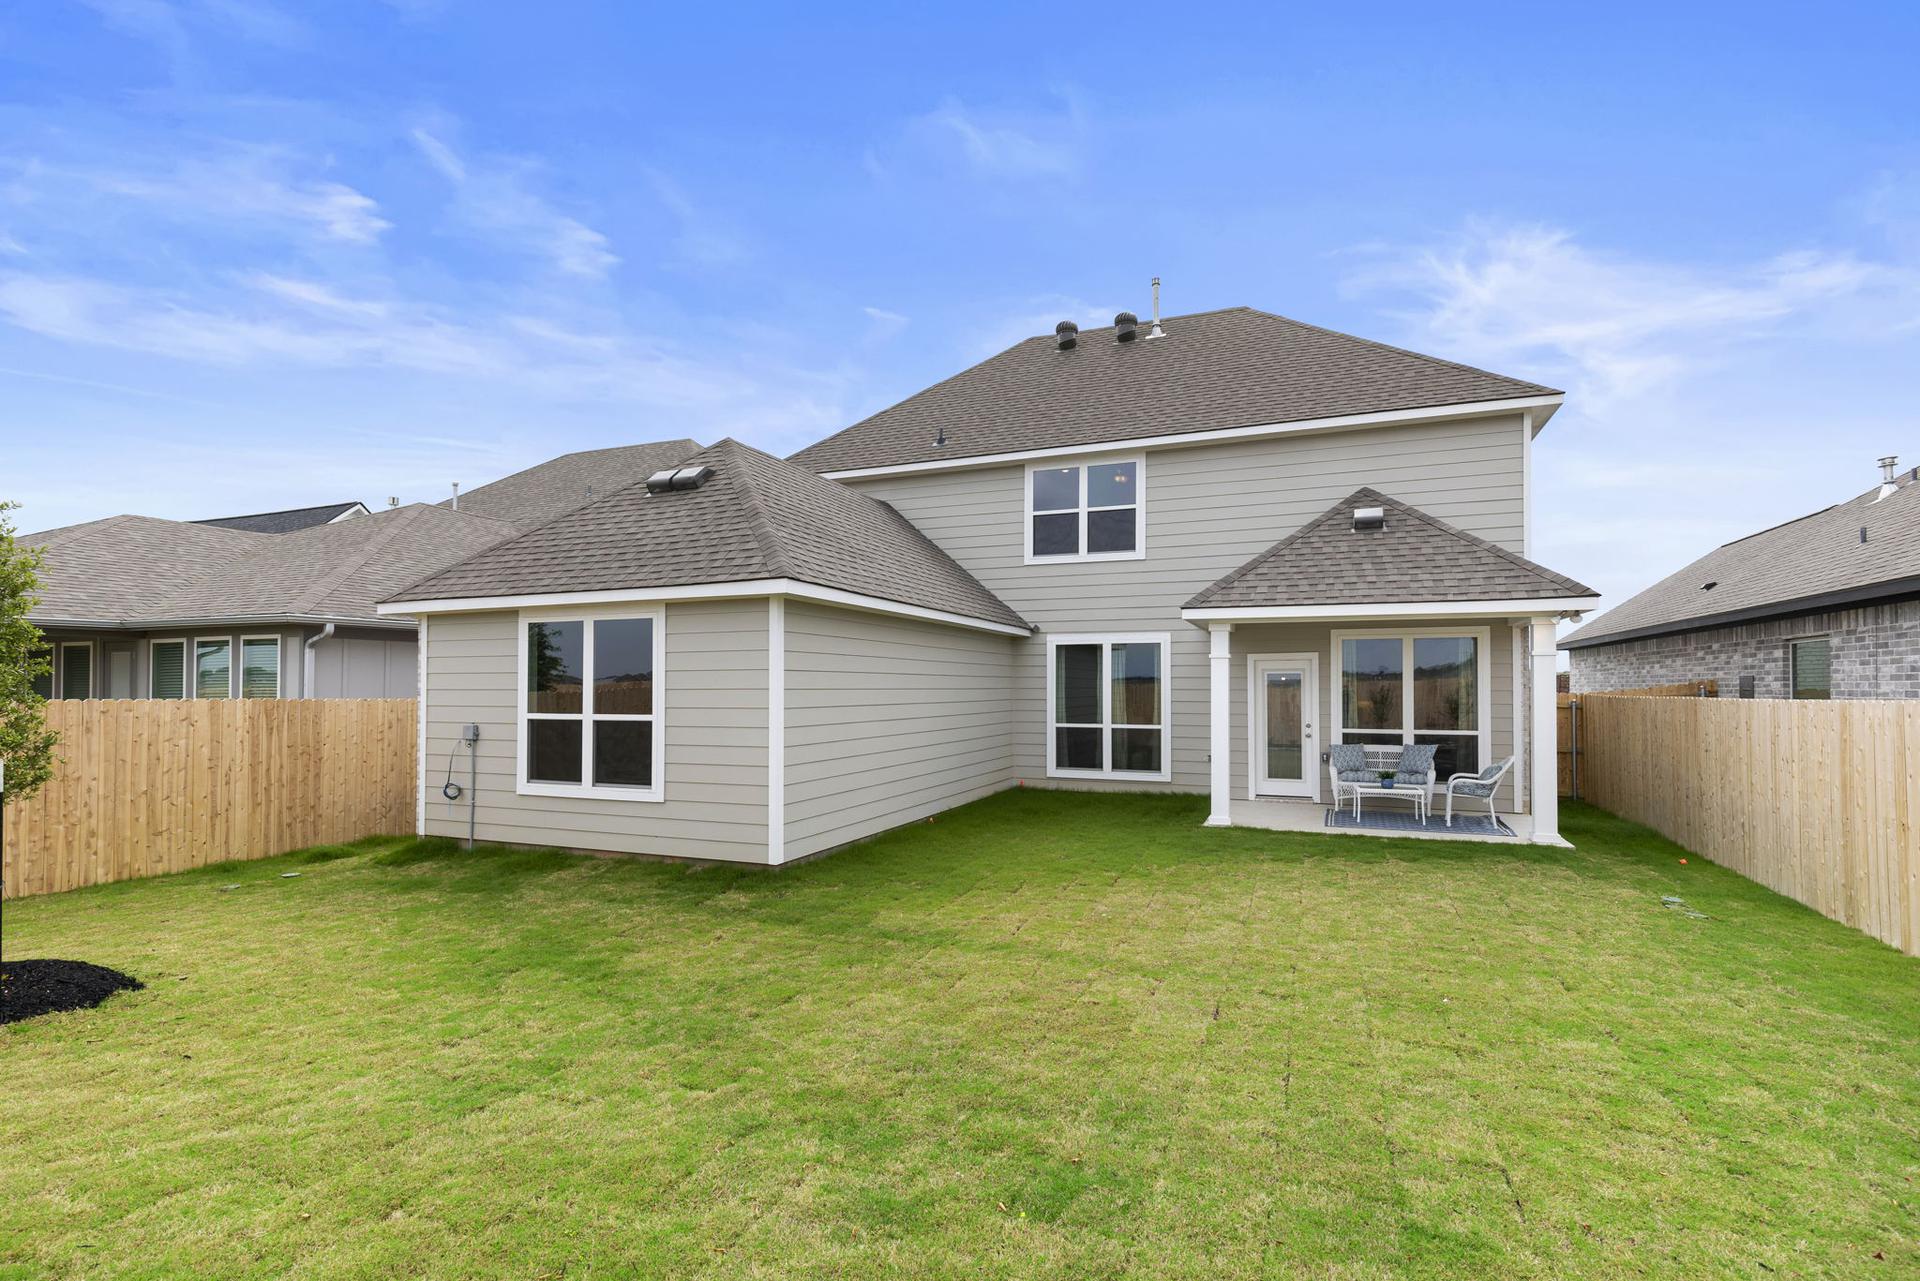 2588 New Home in Brenham, TX